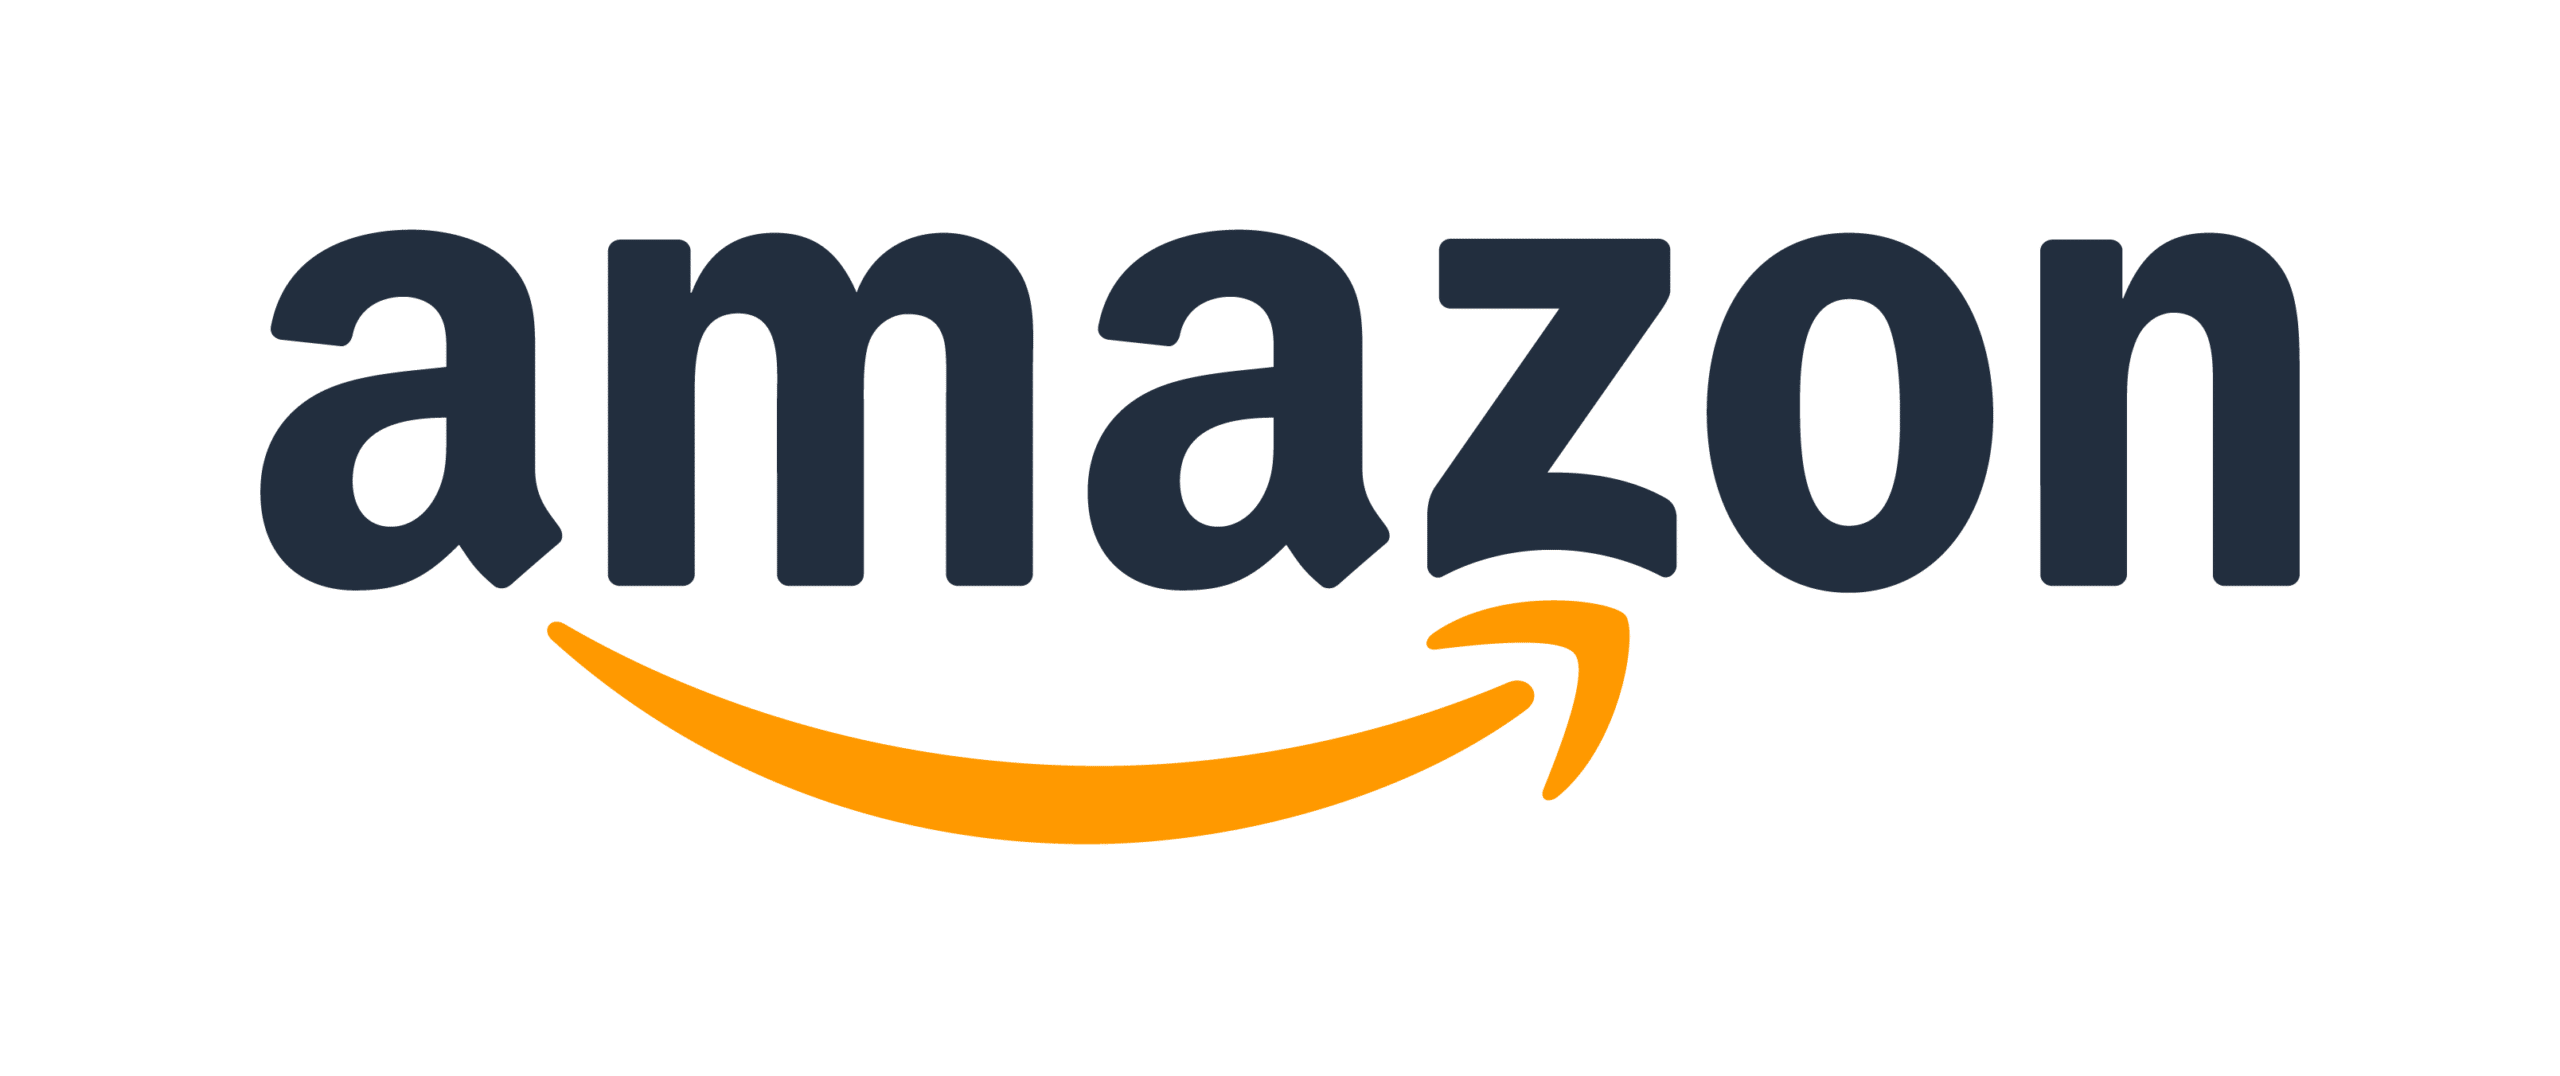 Marketing-Giant-Amazon